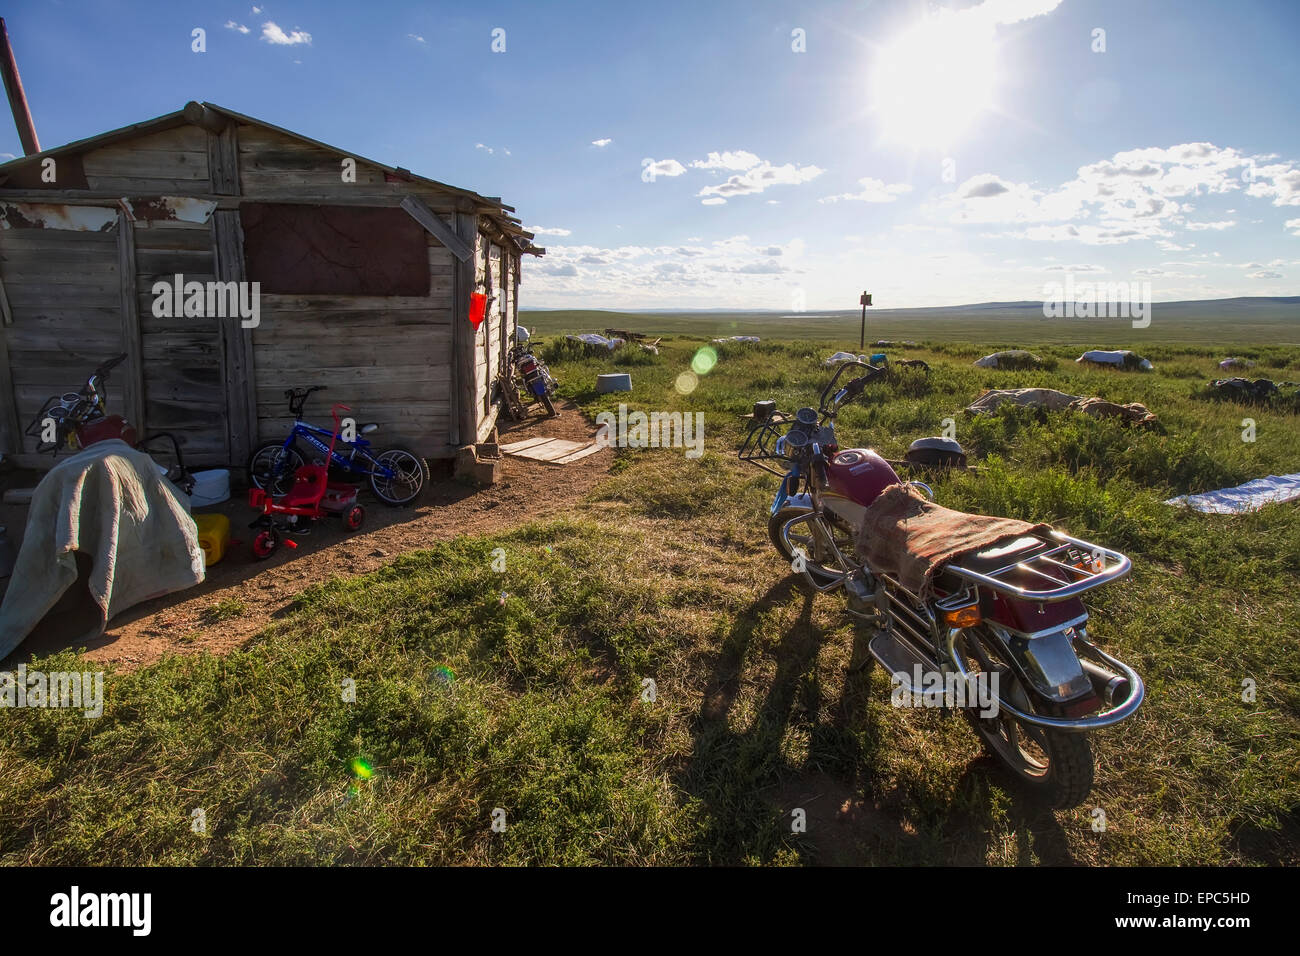 Motorcycle garée à côté d'une maison en bois, Khogno Khan Uul, réserve naturelle de la province Arkhangai, Mongolie Banque D'Images